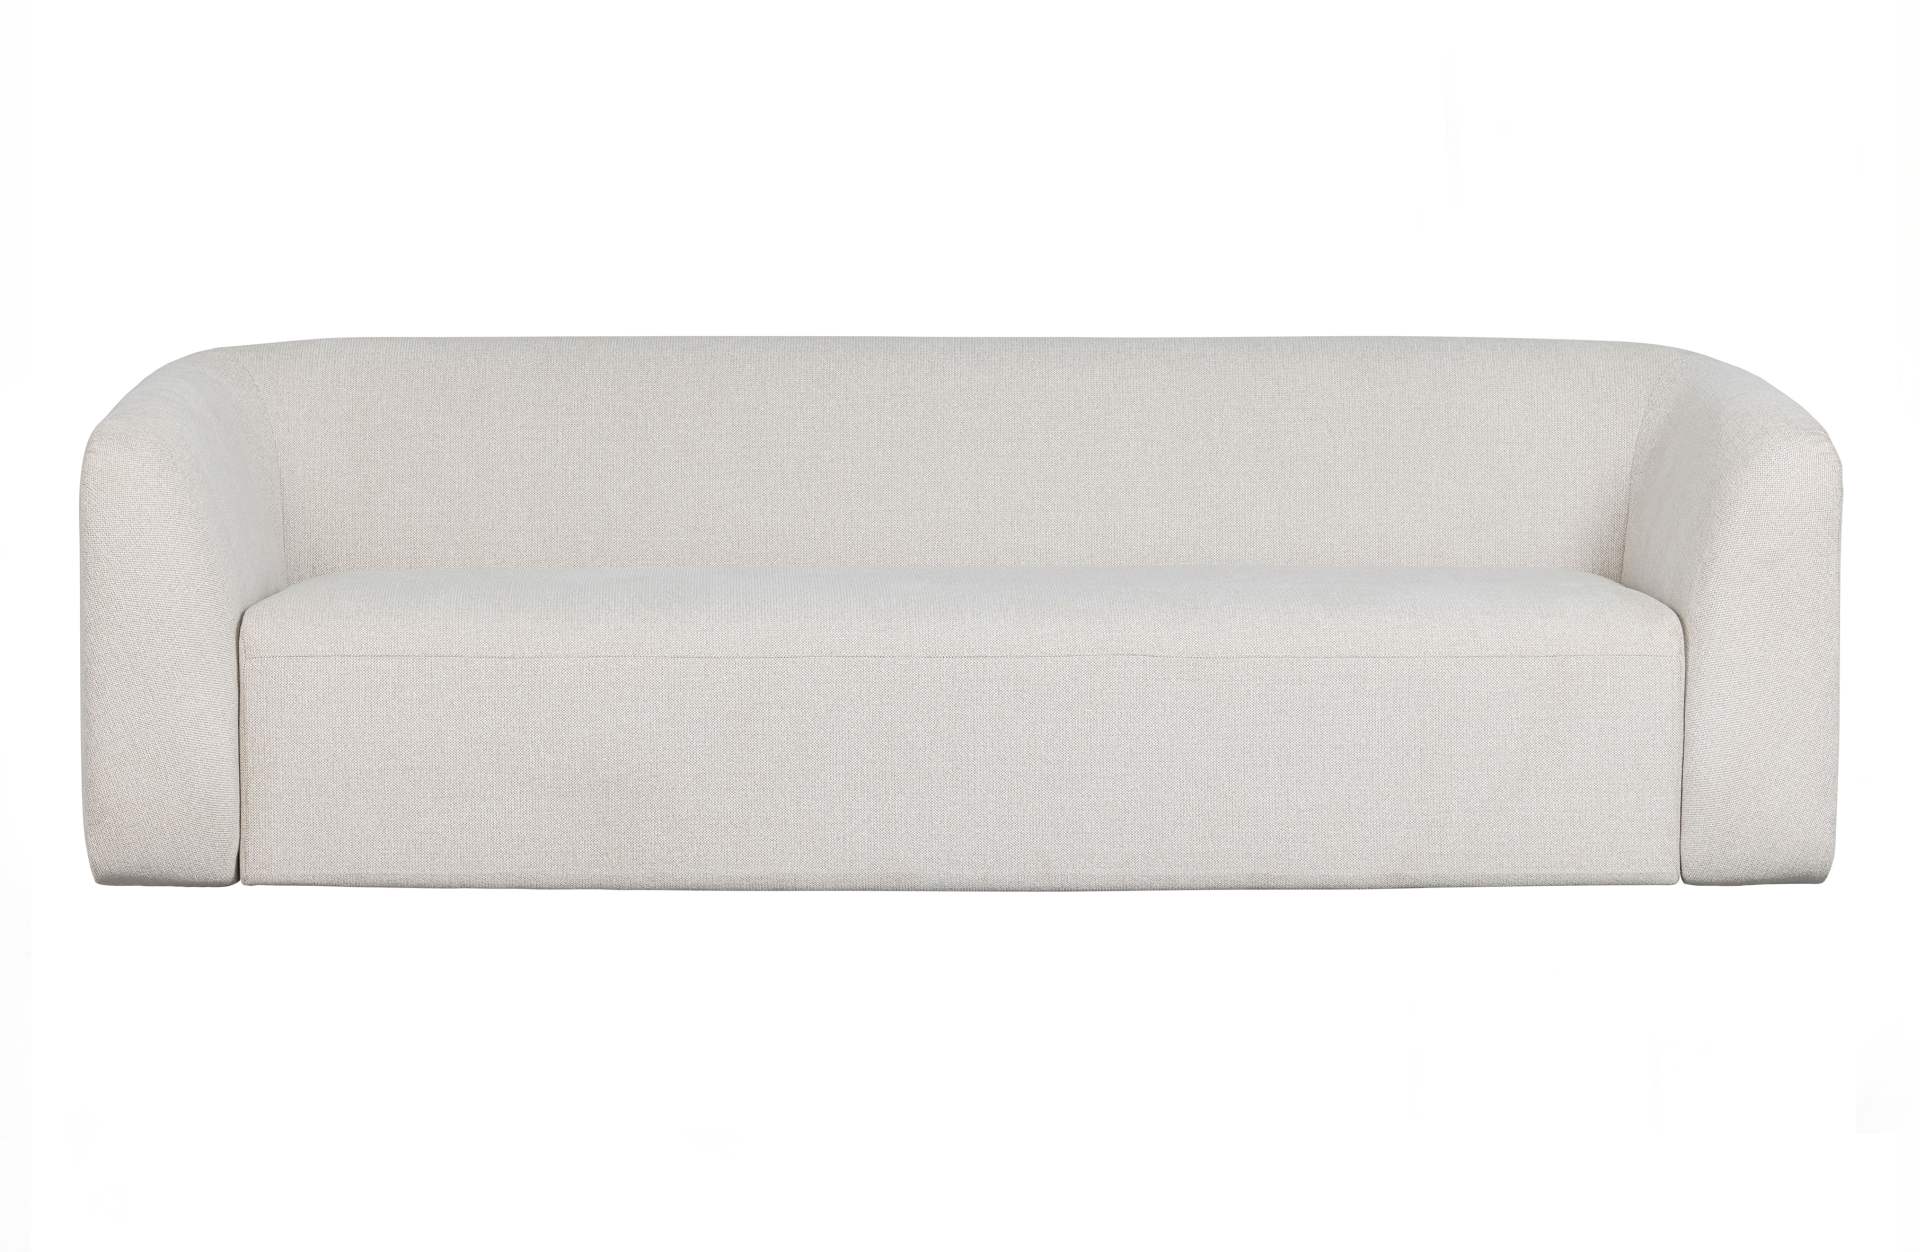 Das 3-Sitzer Sofa Sloping überzeugt mit seinem modernen Design. Gefertigt wurde es aus Kunststofffasern, welche einen einen weißen Farbton besitzen. Das Sofa hat eine Breite von 240 cm und eine Sitzhöhe von 43 cm.